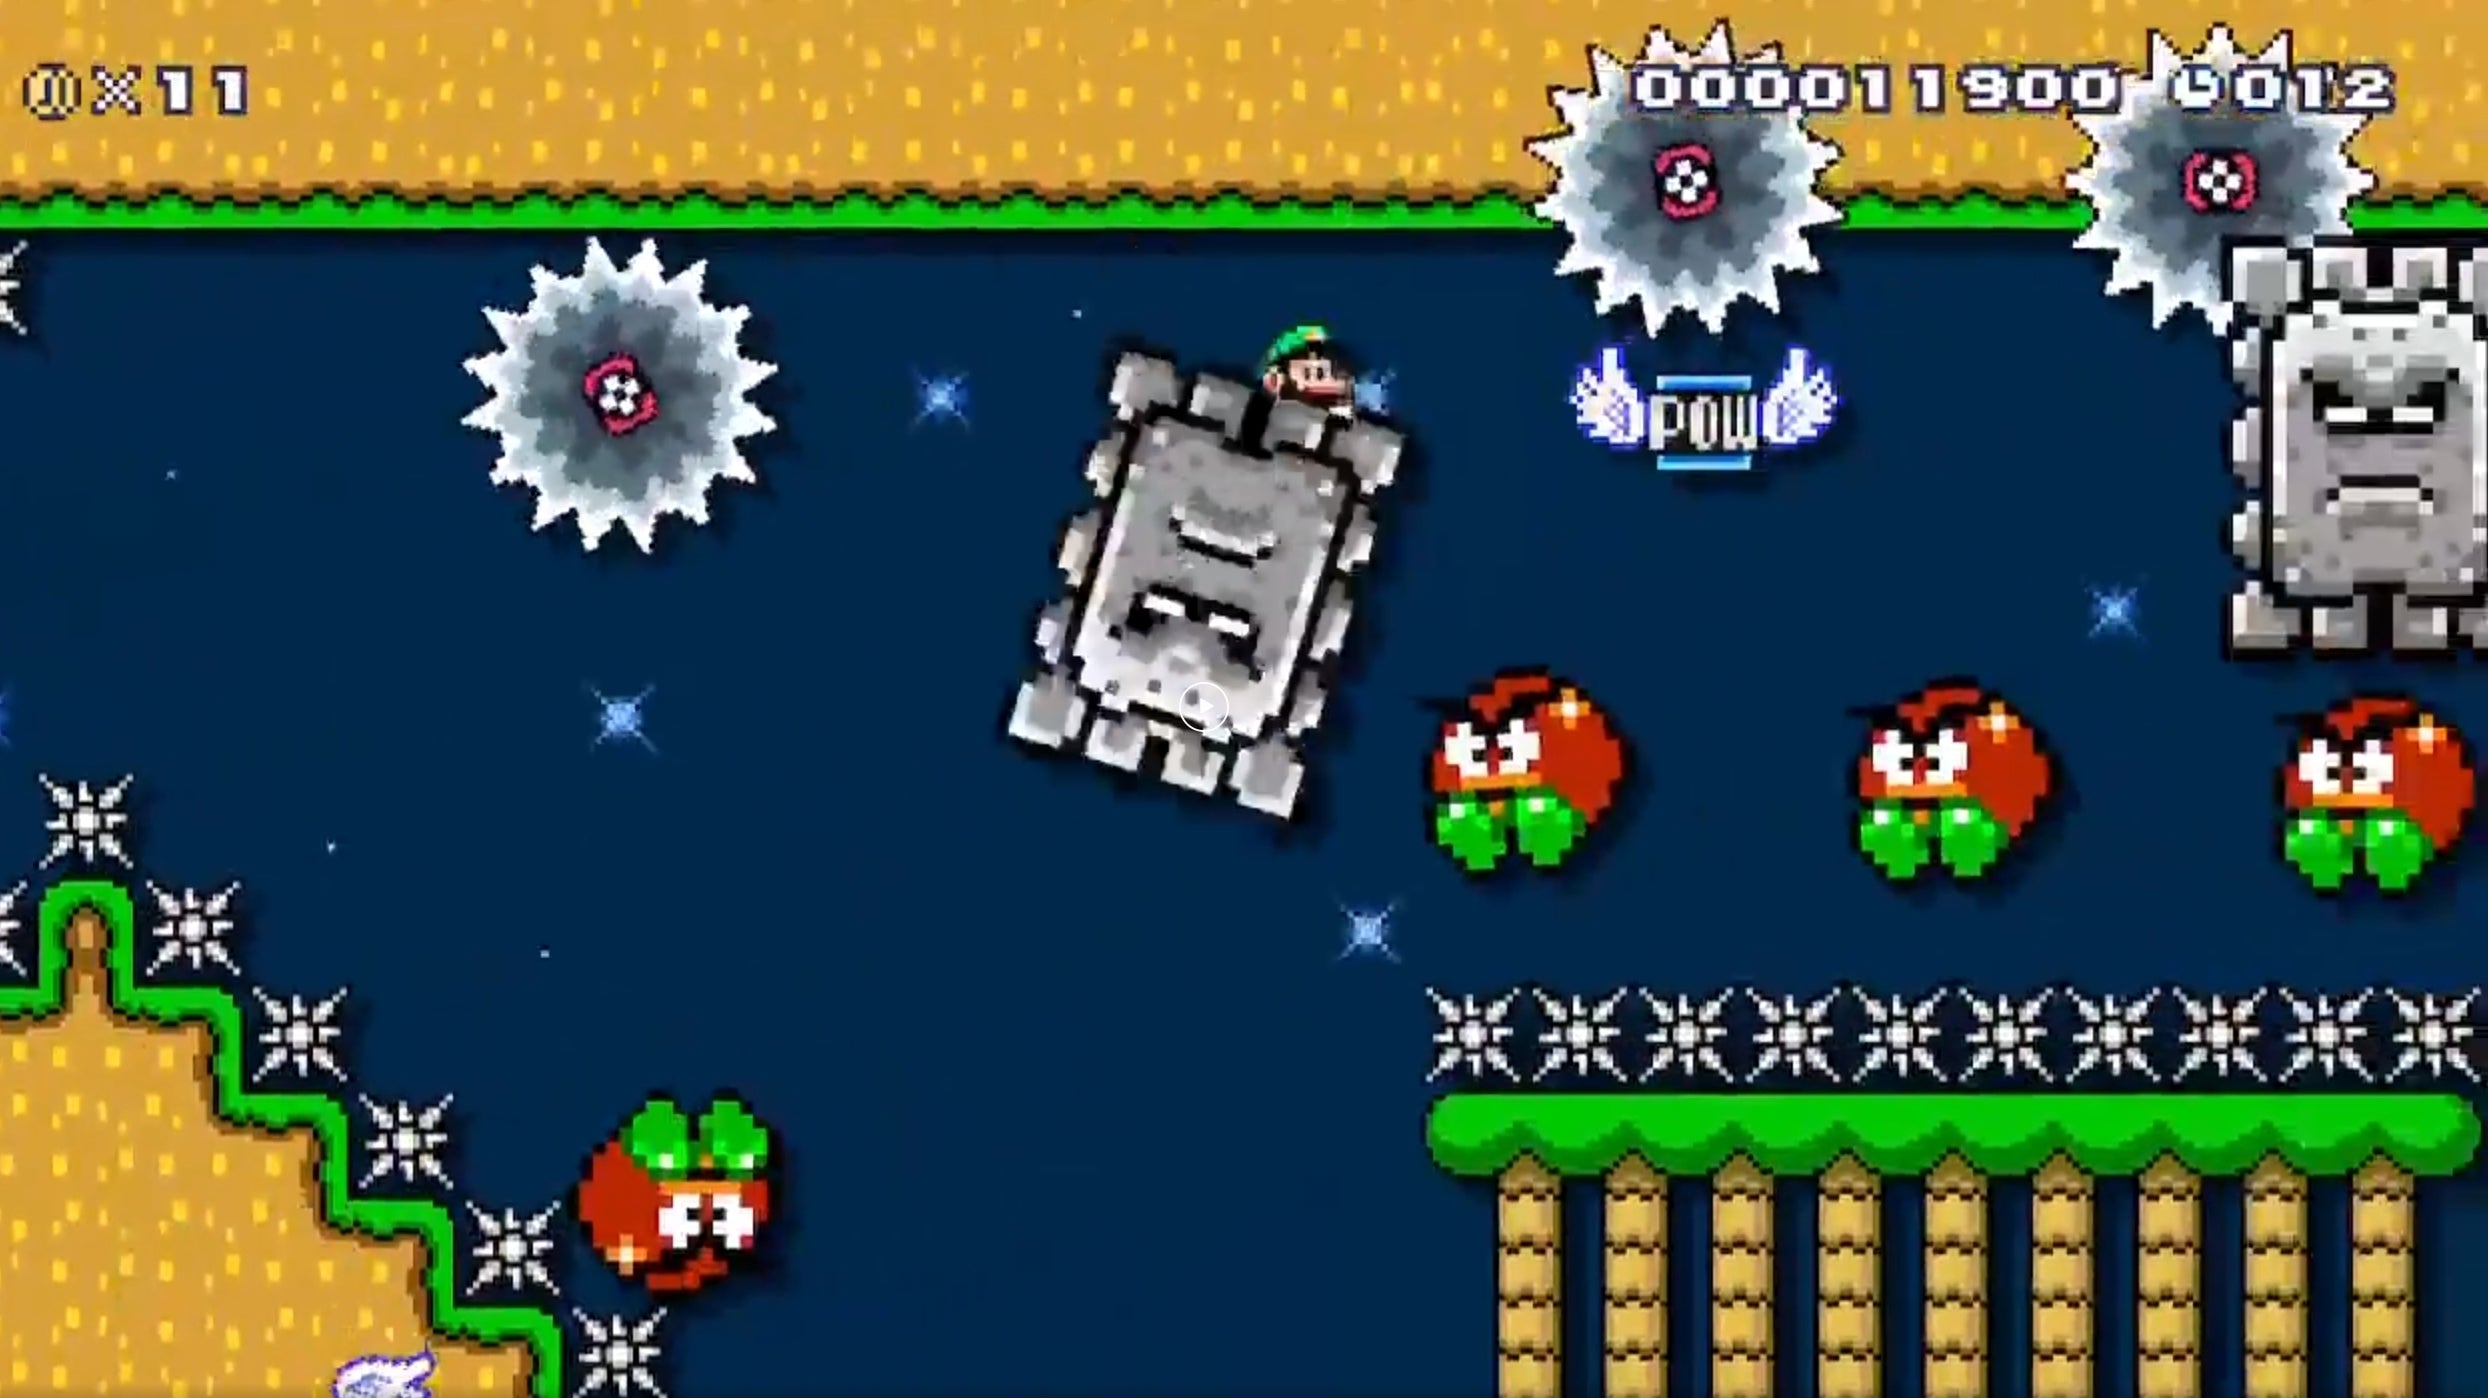 Bilder zu Dieser Level aus Mario Maker 2 auf der Switch lässt euch an euren Skills zweifeln